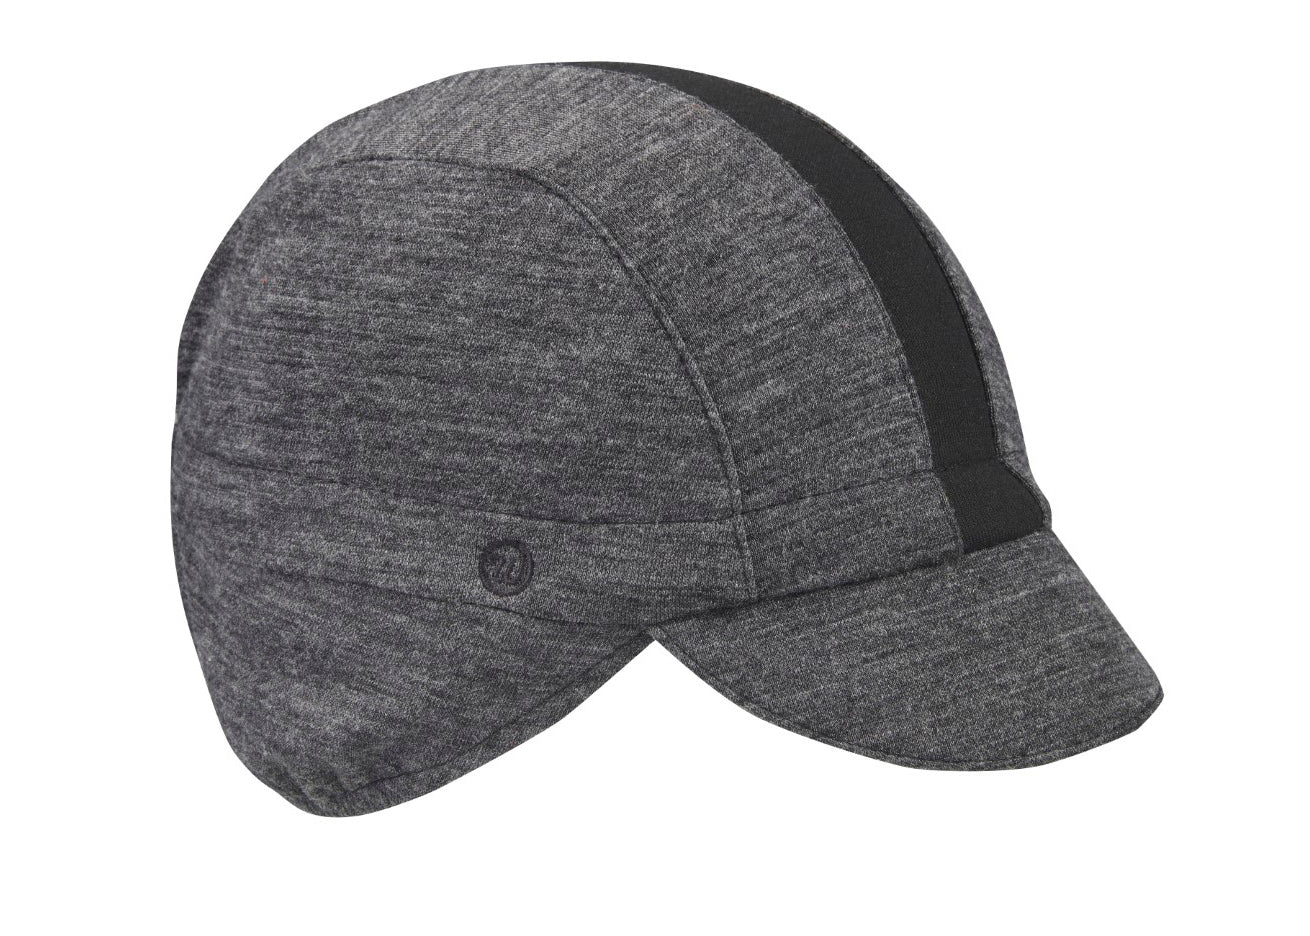 Charcoal/Black Stripe Merino Wool Ear Flap Cap.  Angled view.